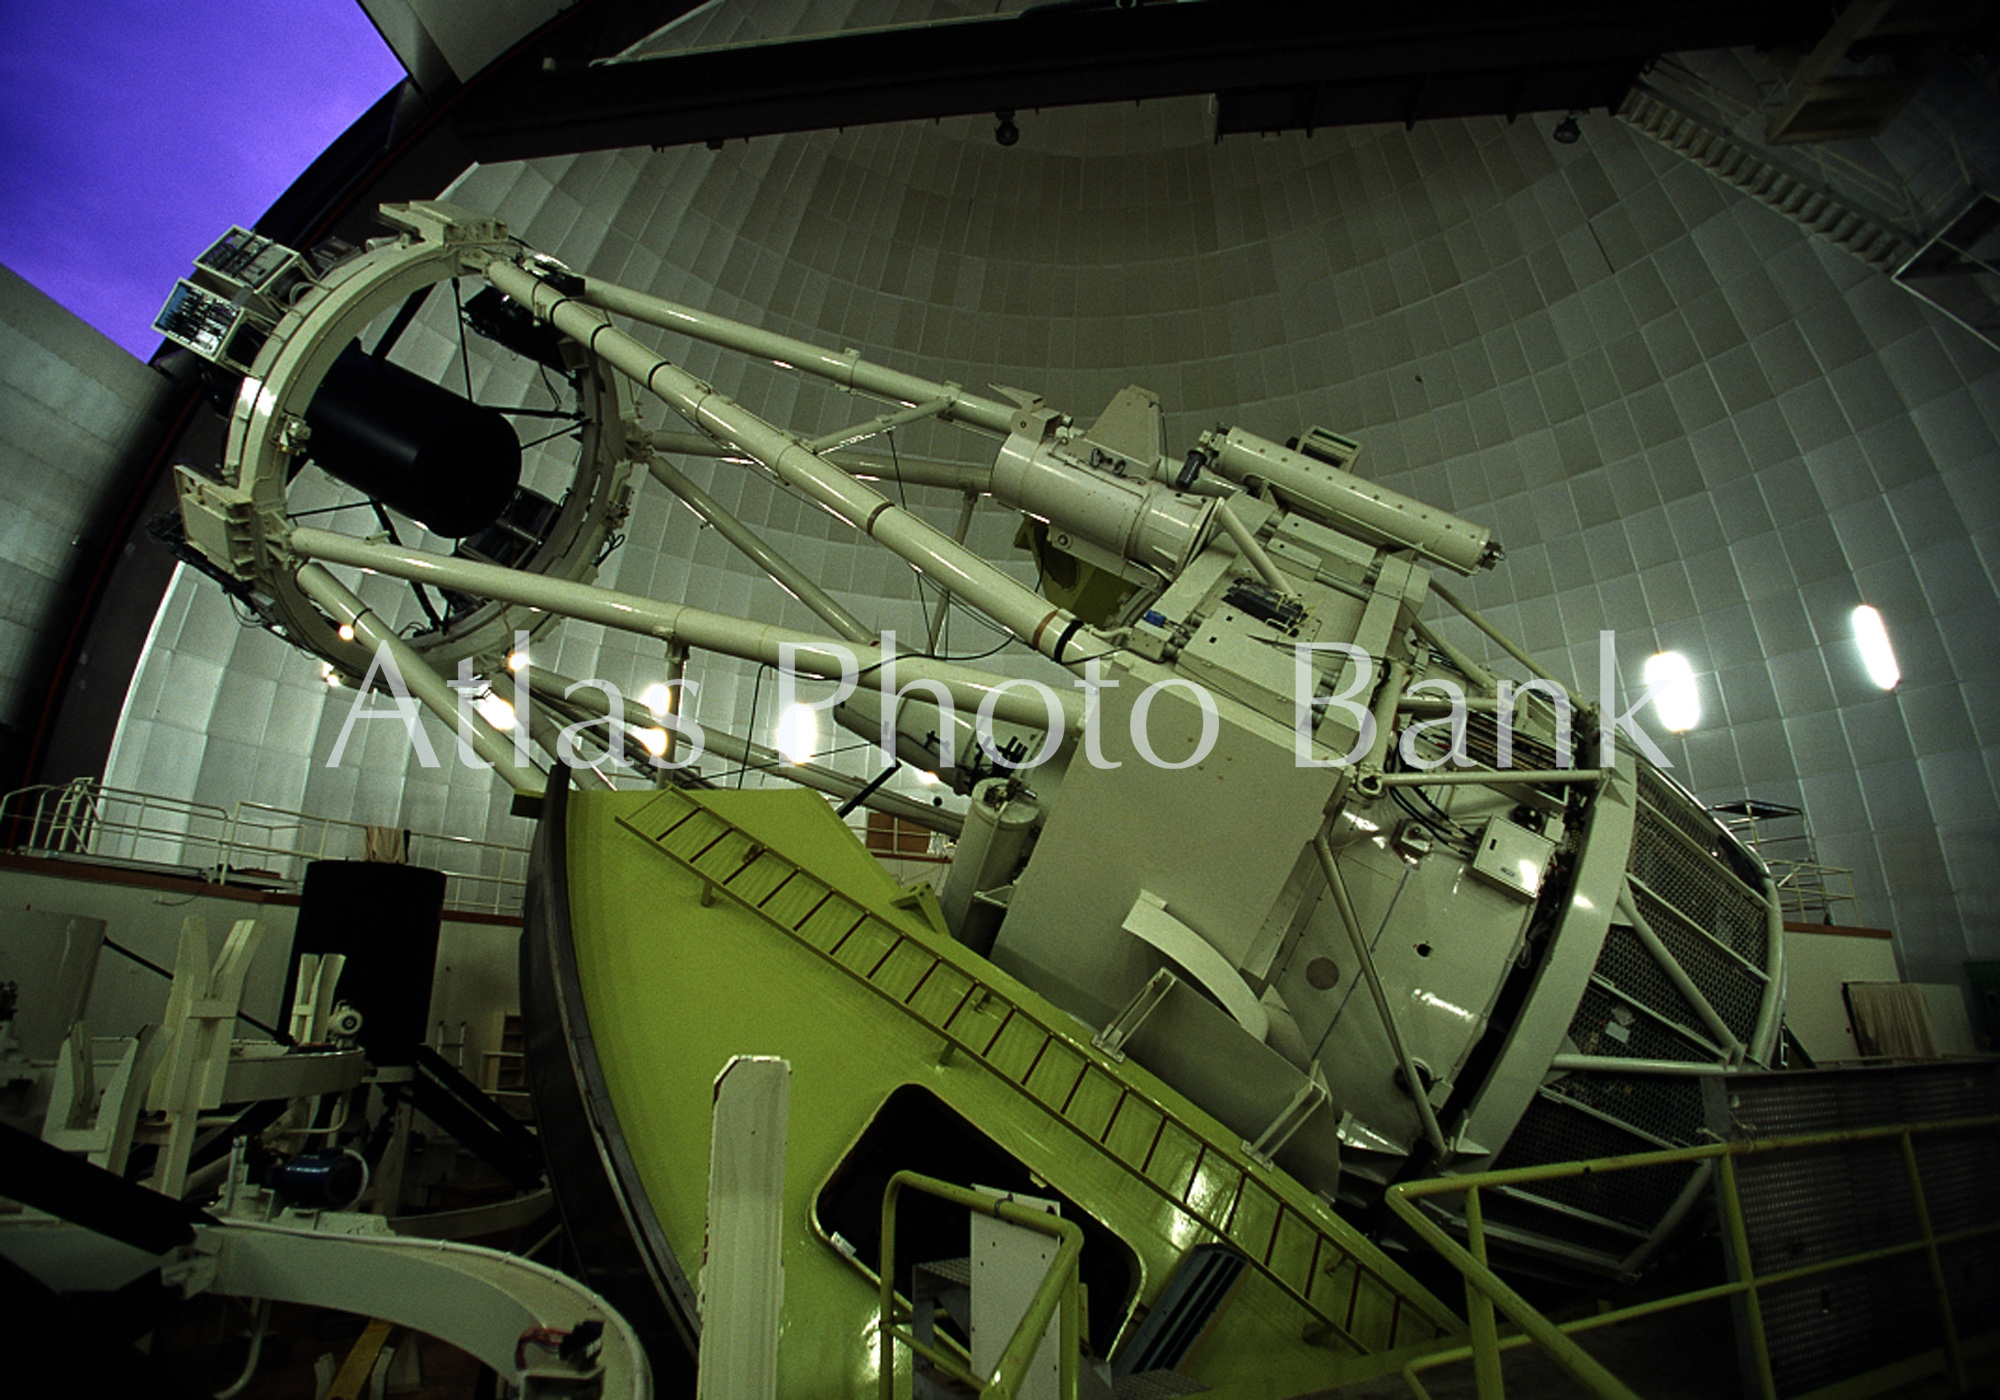 OTP-060-3.9mアングロ･オーストラリアン望遠鏡-サイディング3